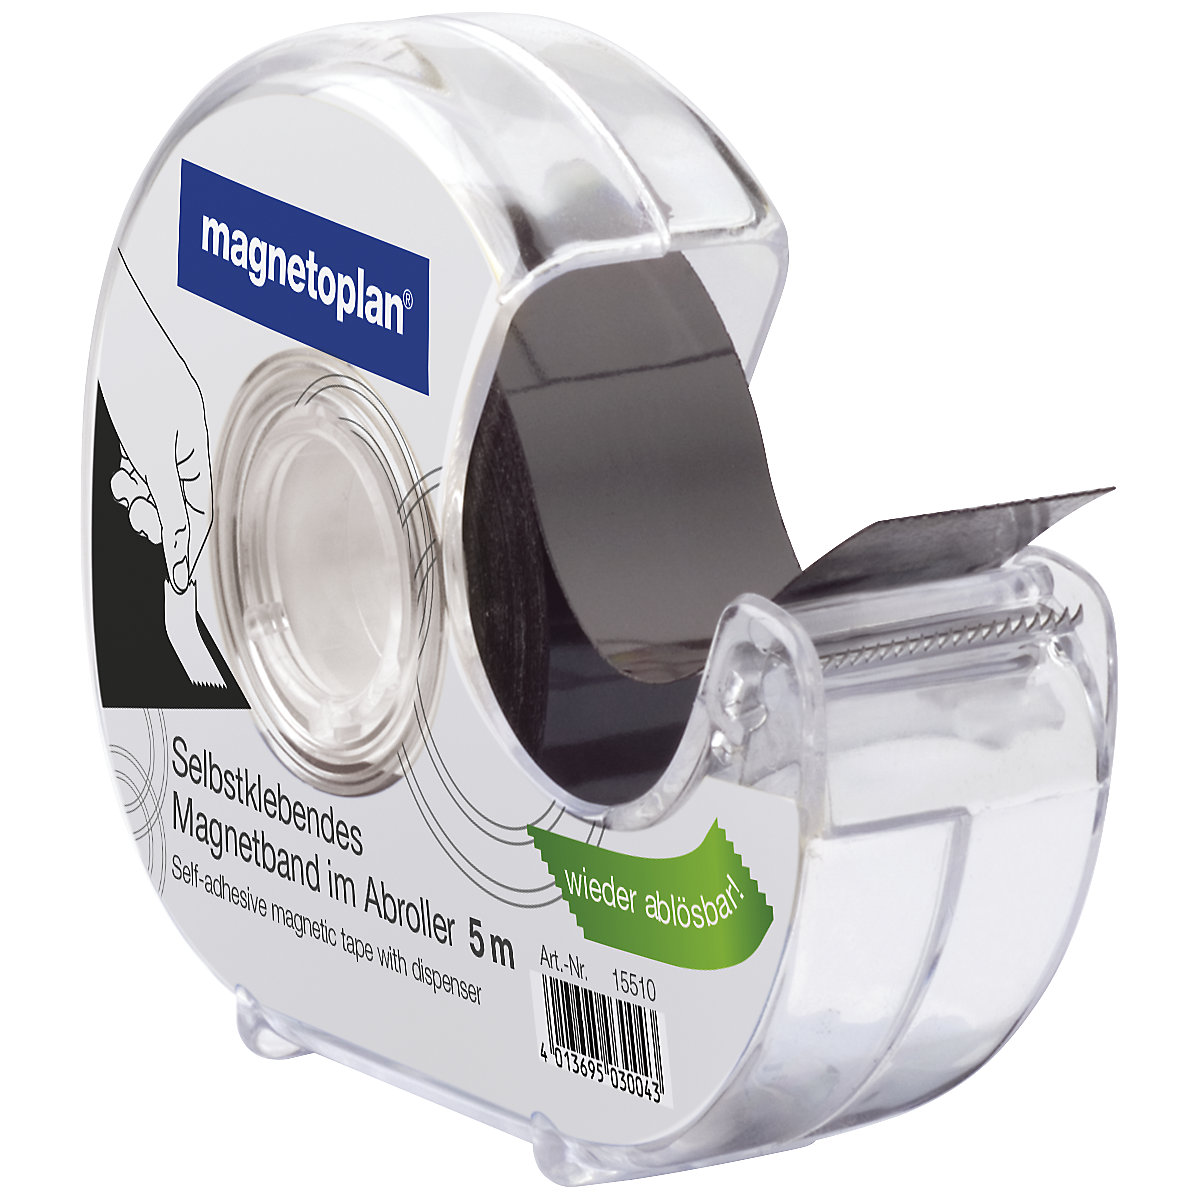 Mágnesszalag – magnetoplan